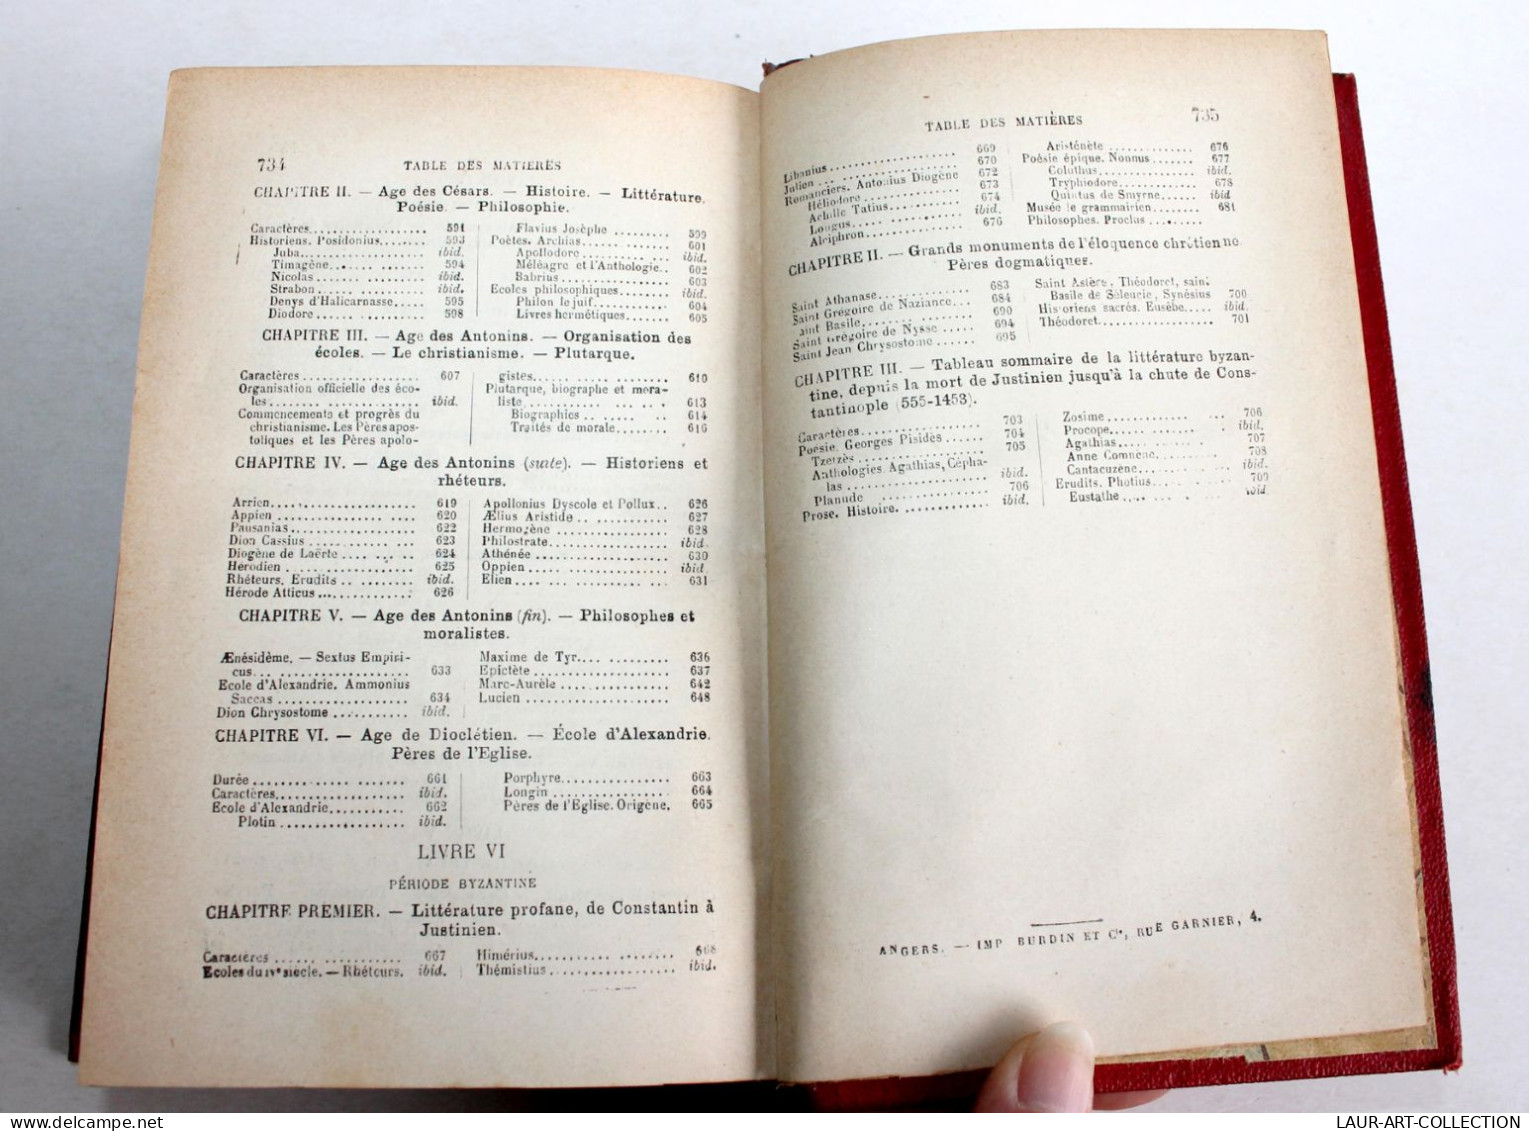 HISTOIRE DE LA LITTERATURE GRECQUE par F. DELTOUR, 4e EDITION 1890 Lib DELAGRAVE / ANCIEN LIVRE XIXe SIECLE (2603.3)